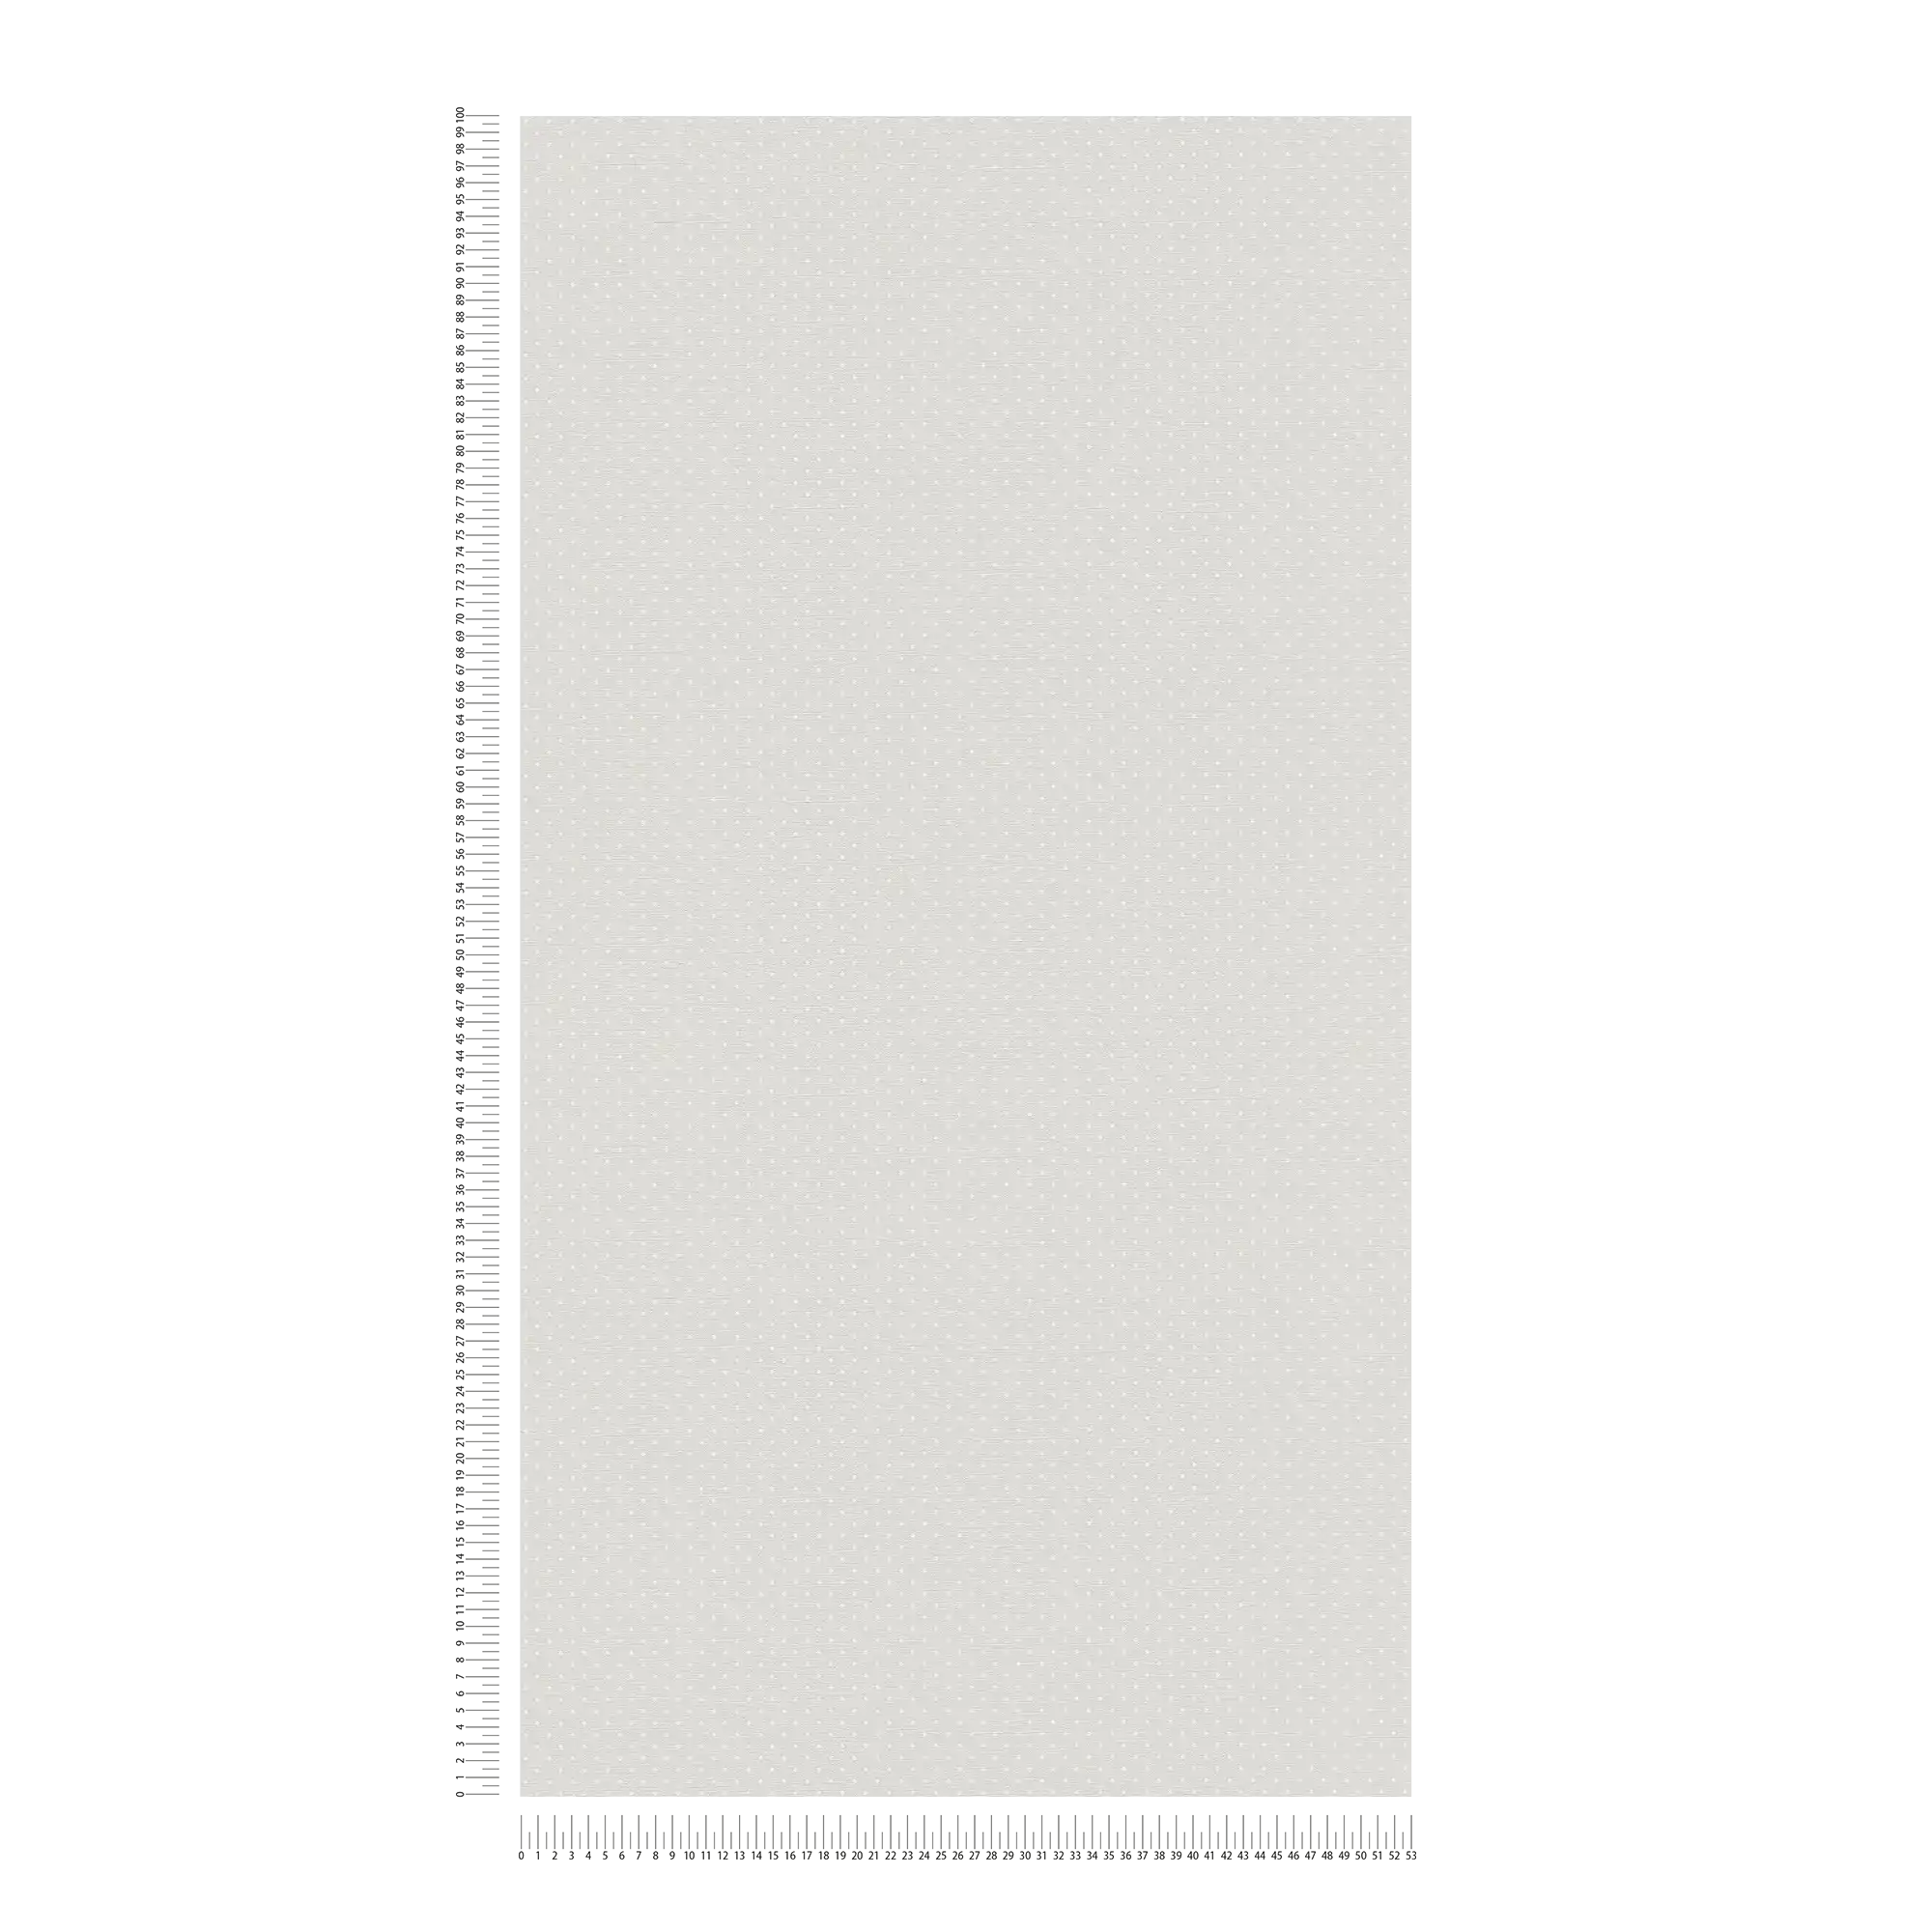             Vliesbehang met klein stippenpatroon - grijs, wit
        